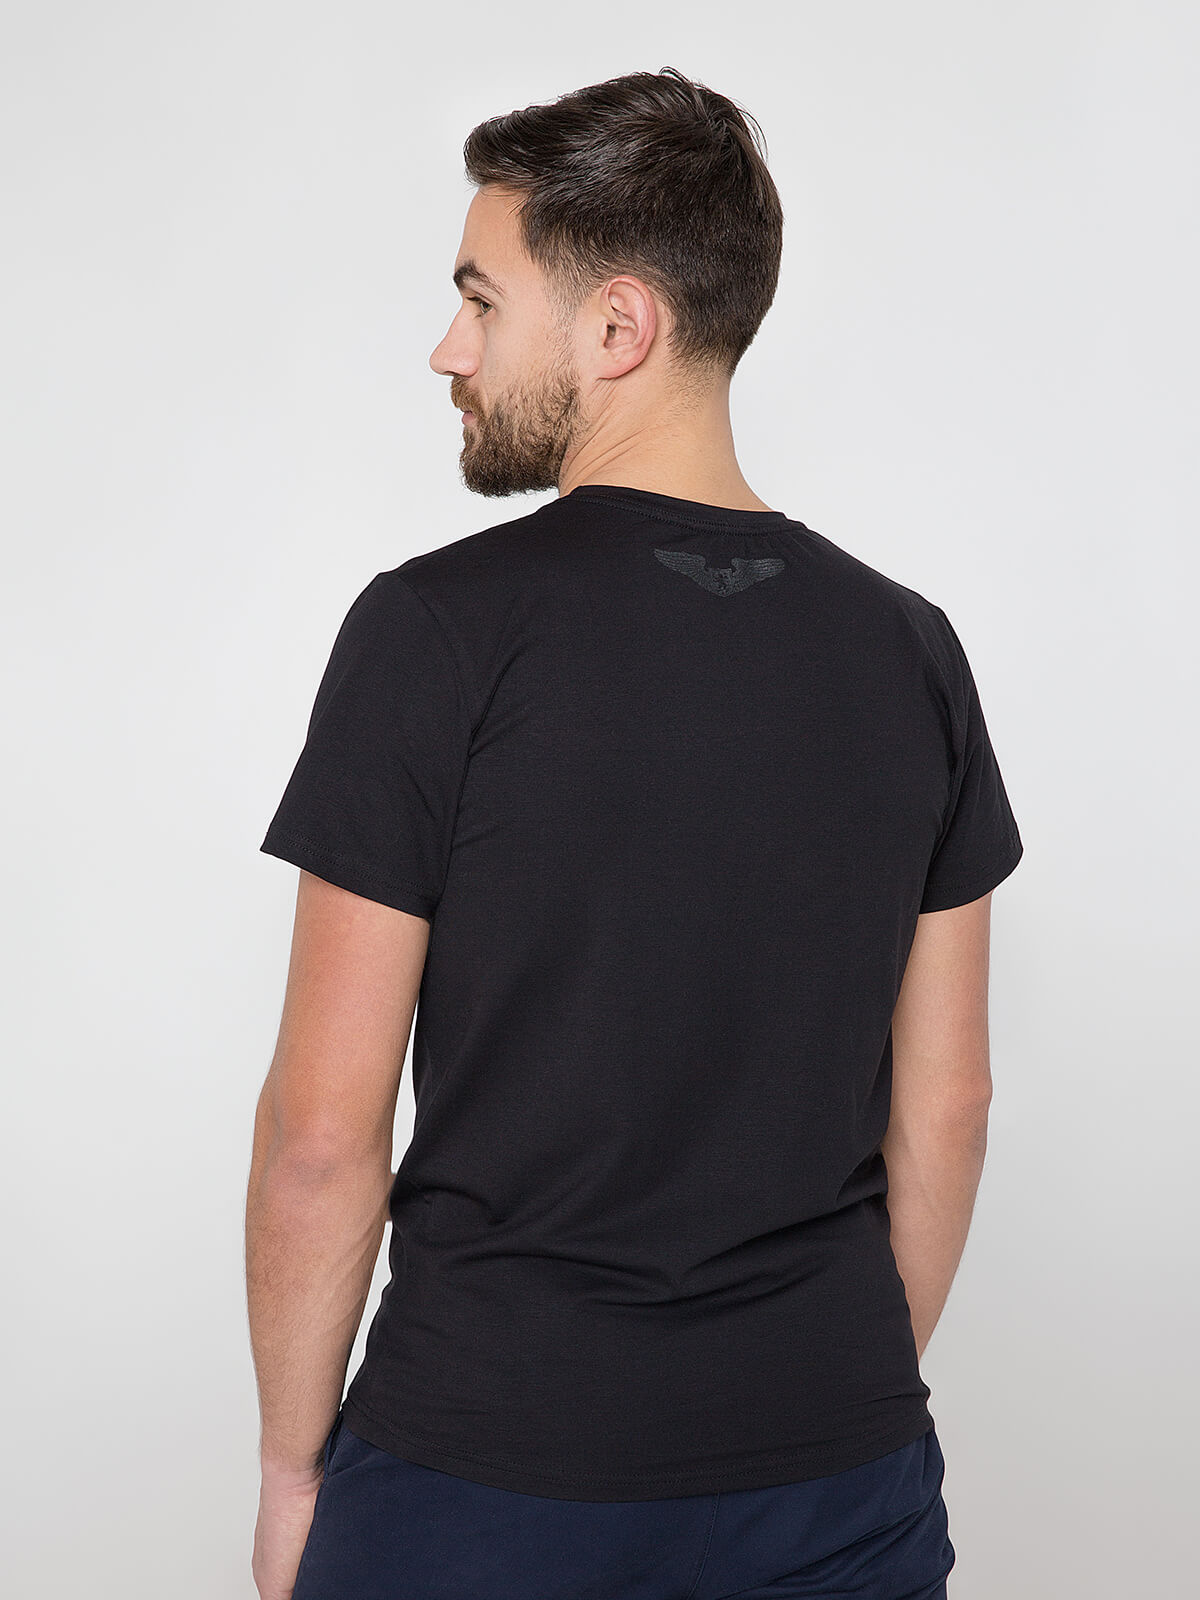 Men's T-Shirt Roundel. Color black. 
Material: 95% cotton, 5% spandex.